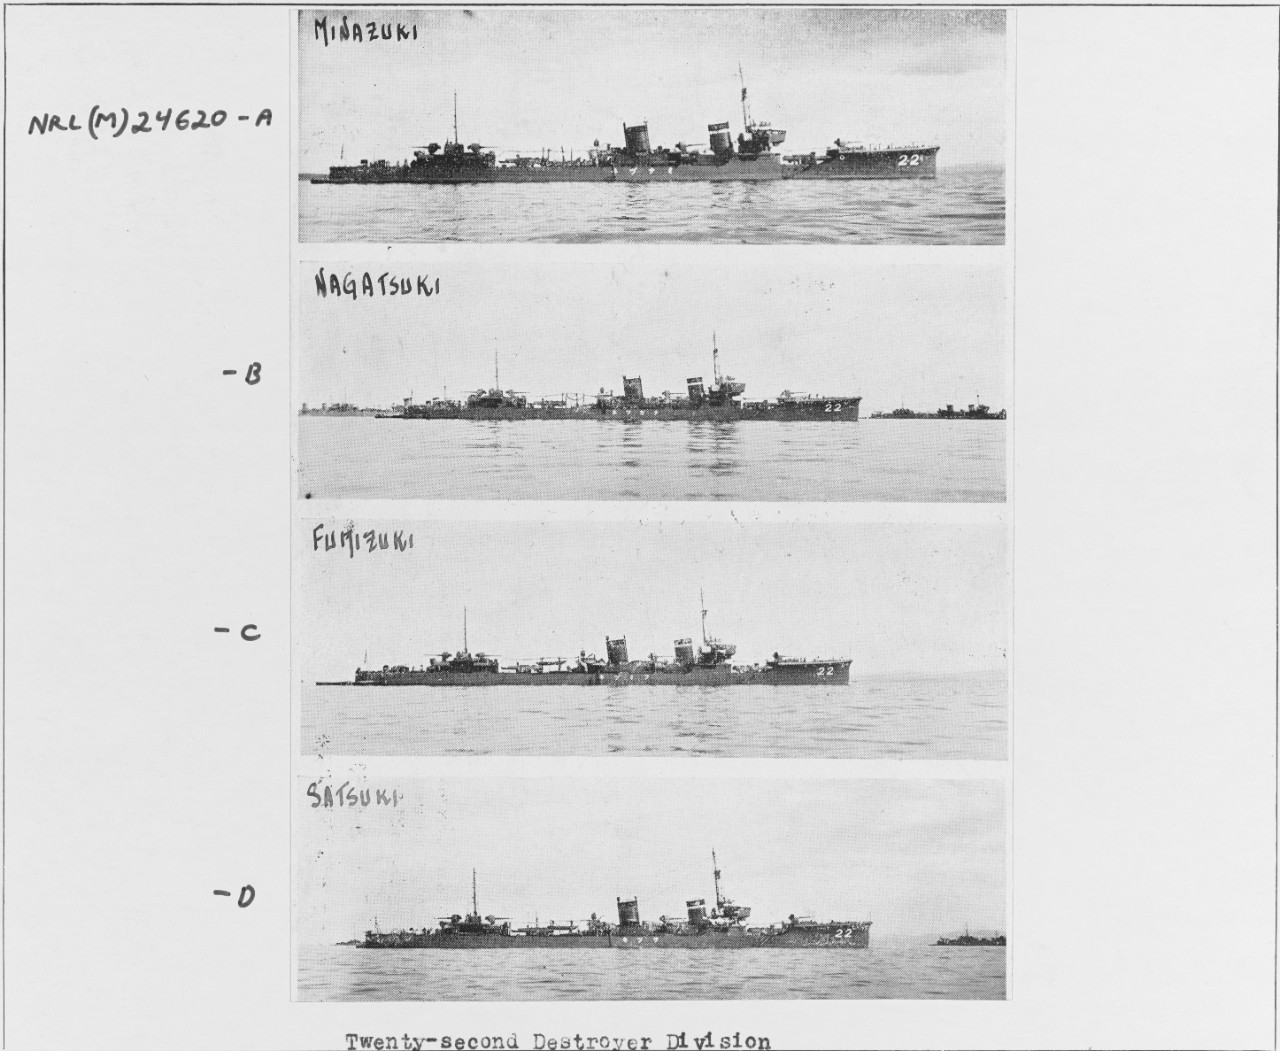 Japanese Destroyers: MINAZUKI, NAGATSUKI, FUMIZUKI, SATSUKI